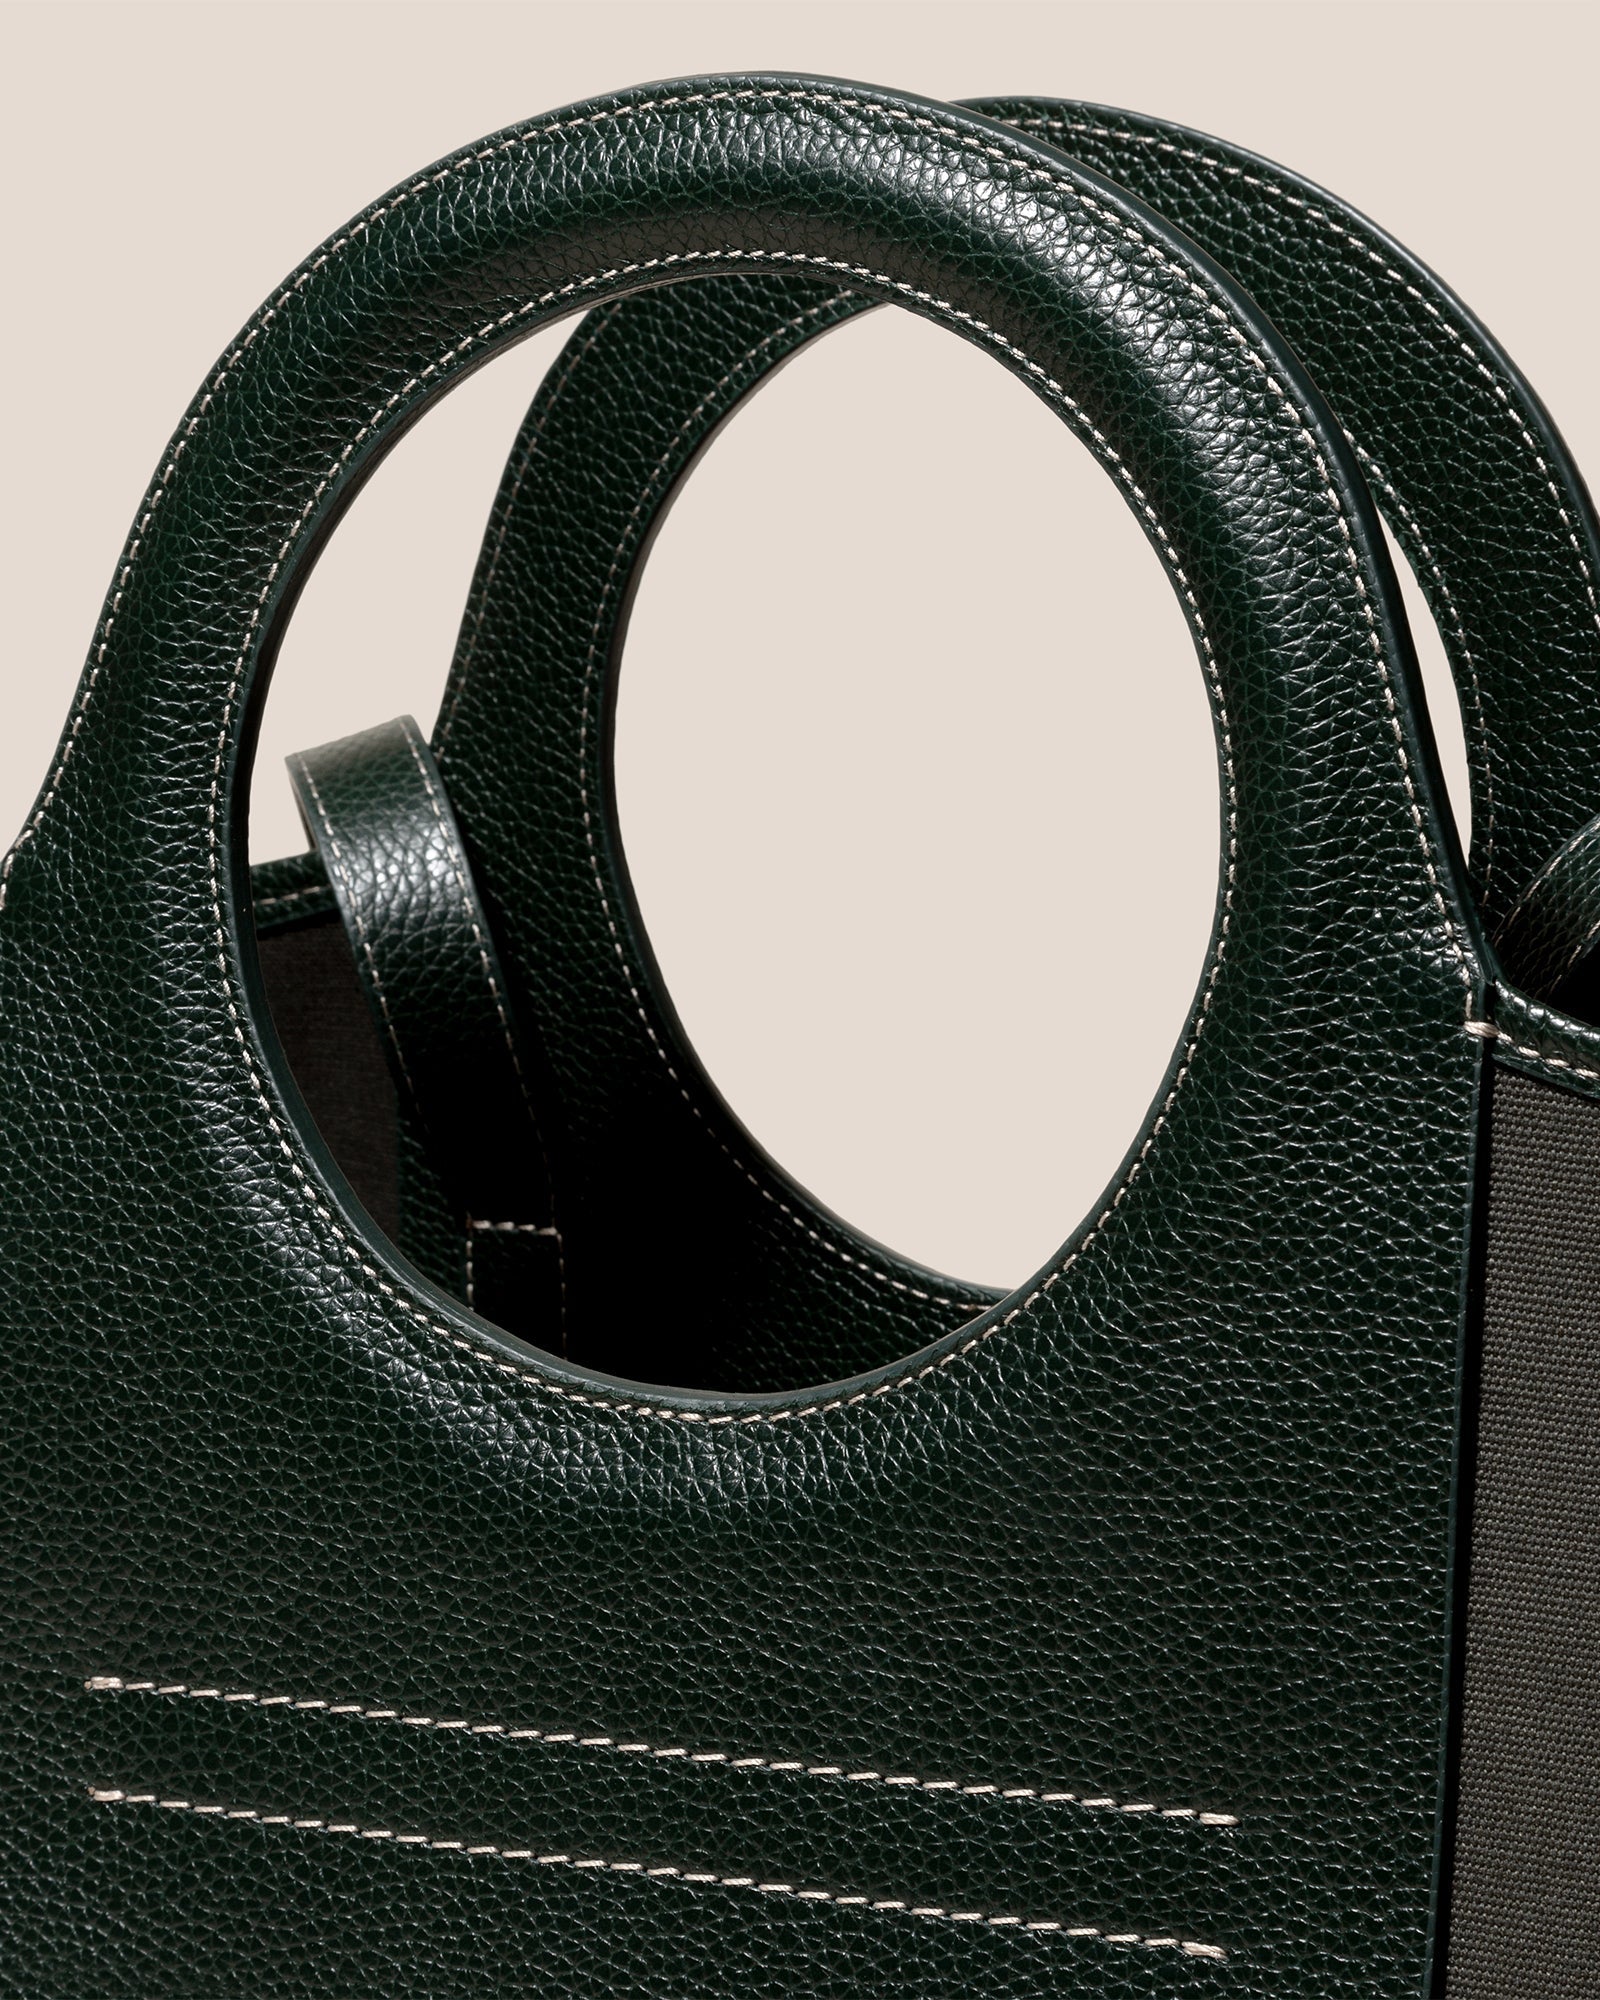 CALA L GRAINY - Canvas-Leather Tote Bag – Hereu Studio